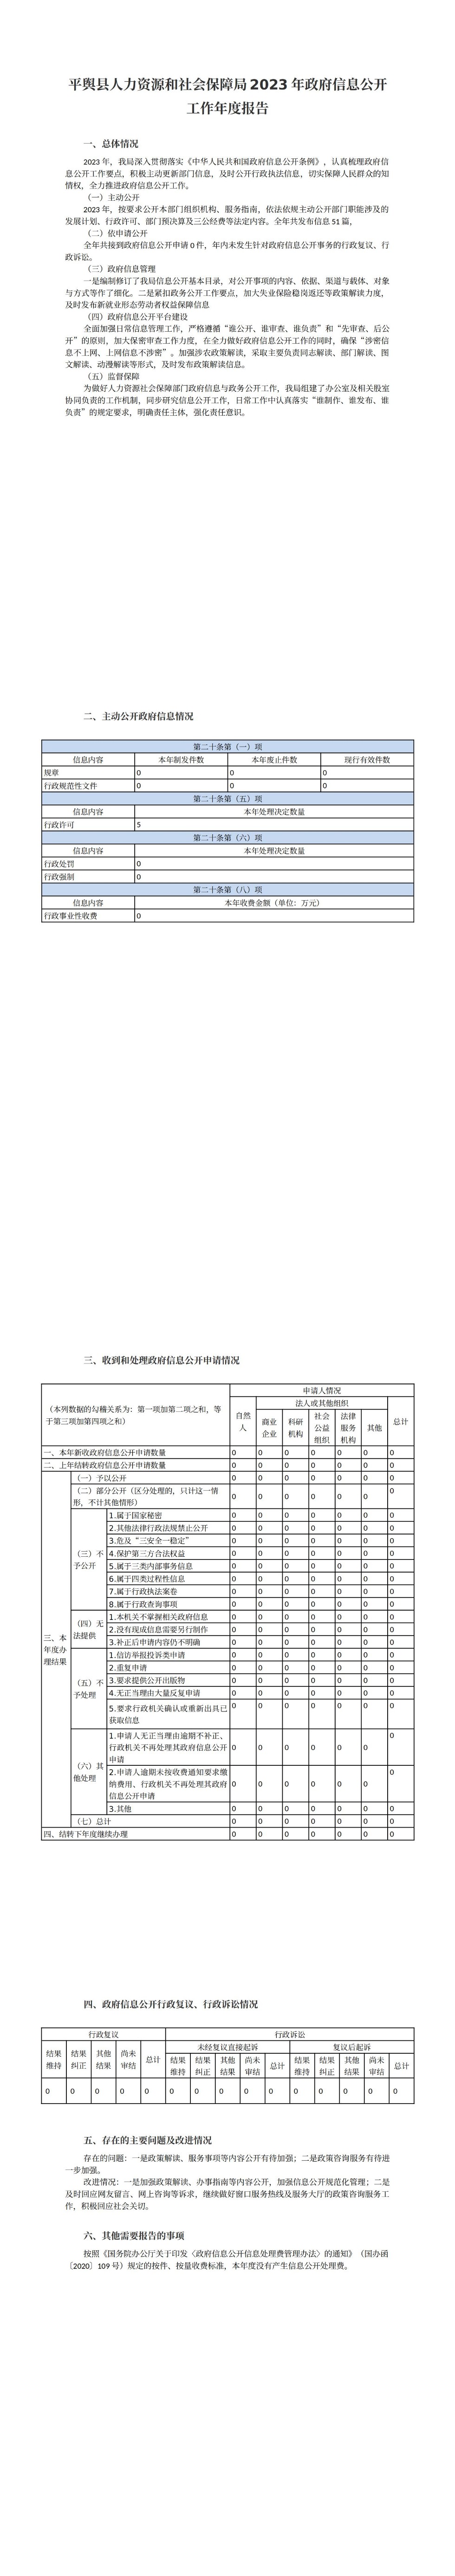 平舆县人力资源和社会保障局2023年政府信息公开工作年度报告_00.jpg